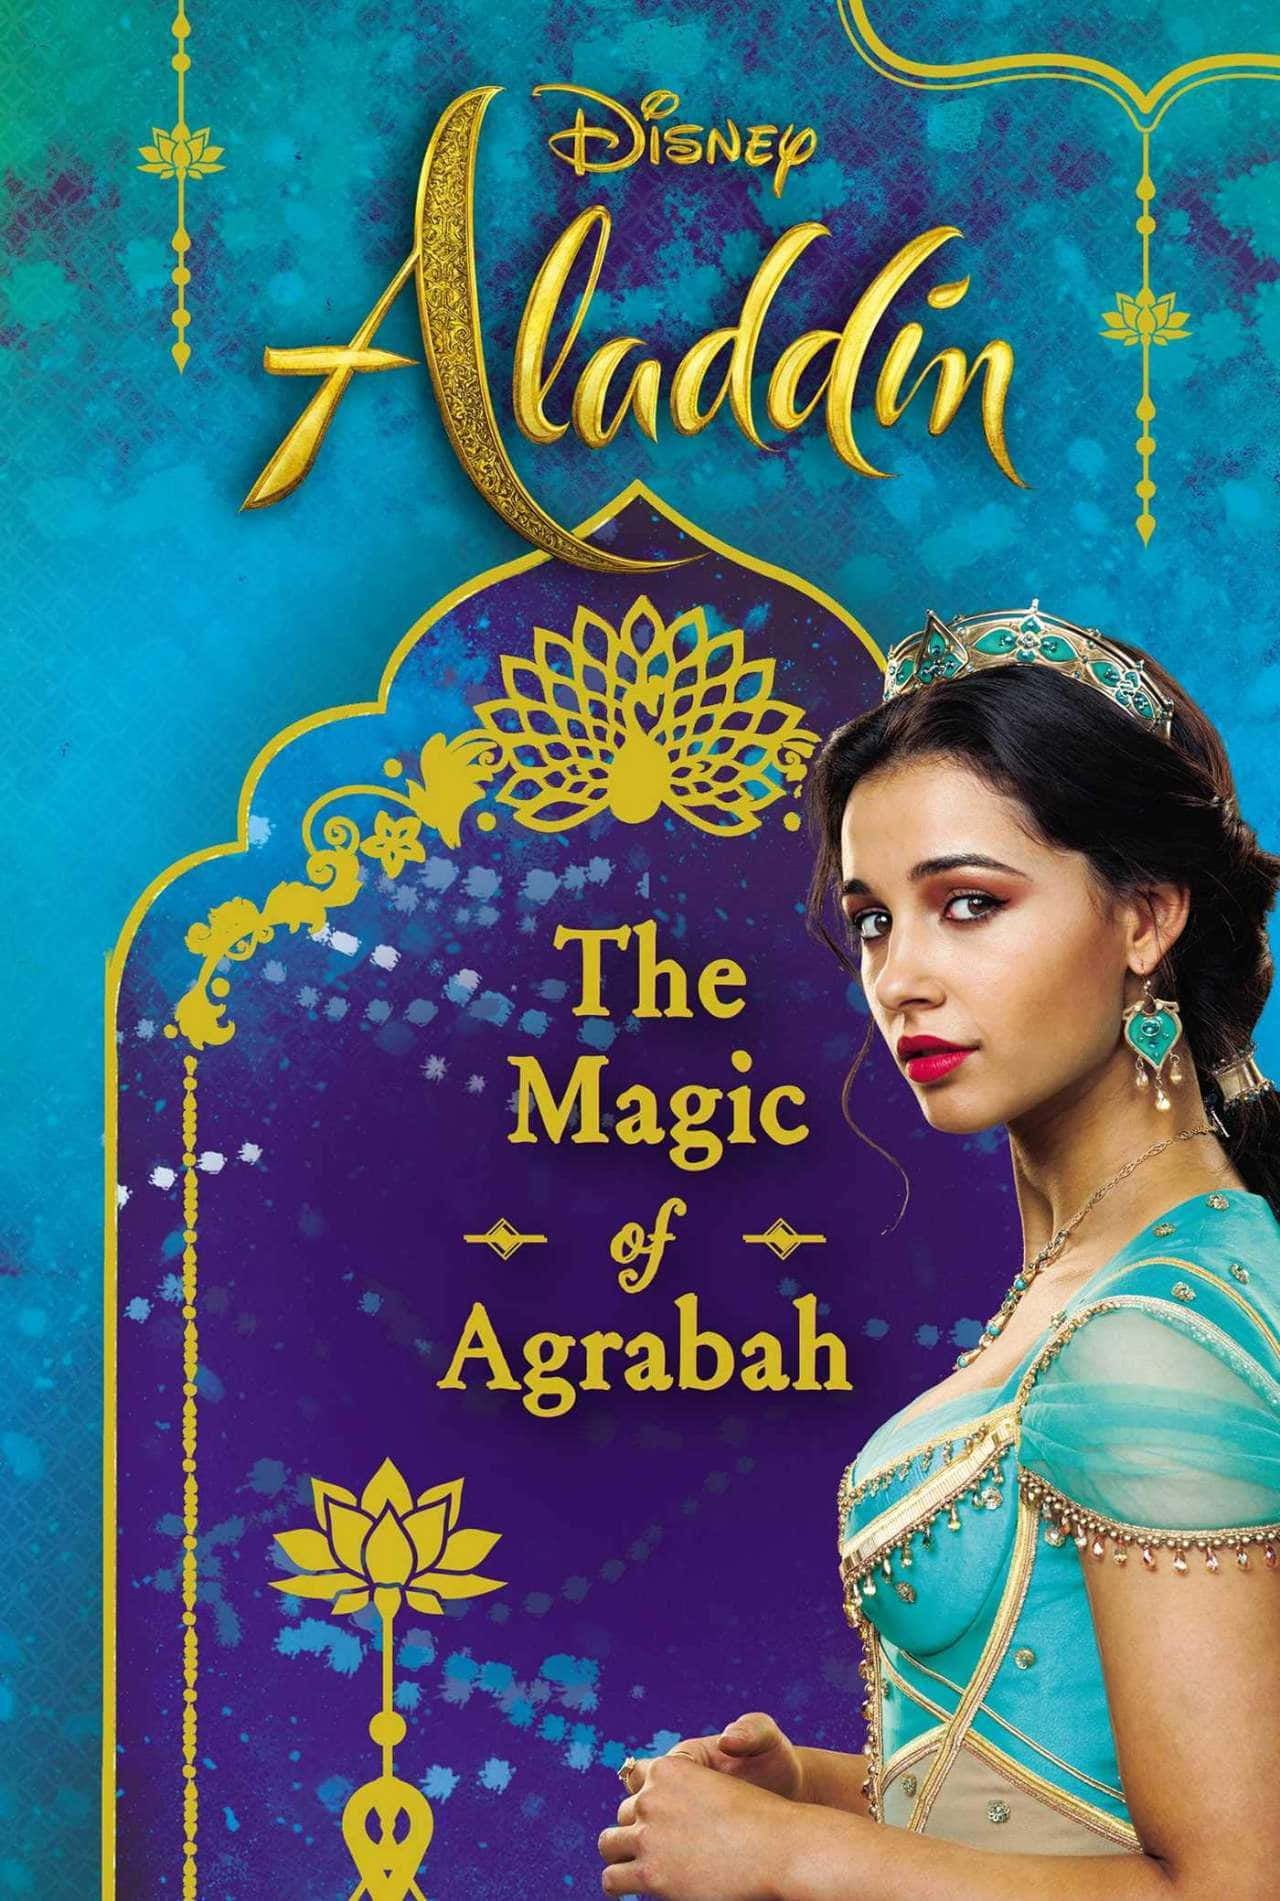 Delegendariska Och Älskade Karaktärerna Aladdin Och Prinsessan Jasmine Njuter Av En Magisk Önskedrömskväll.